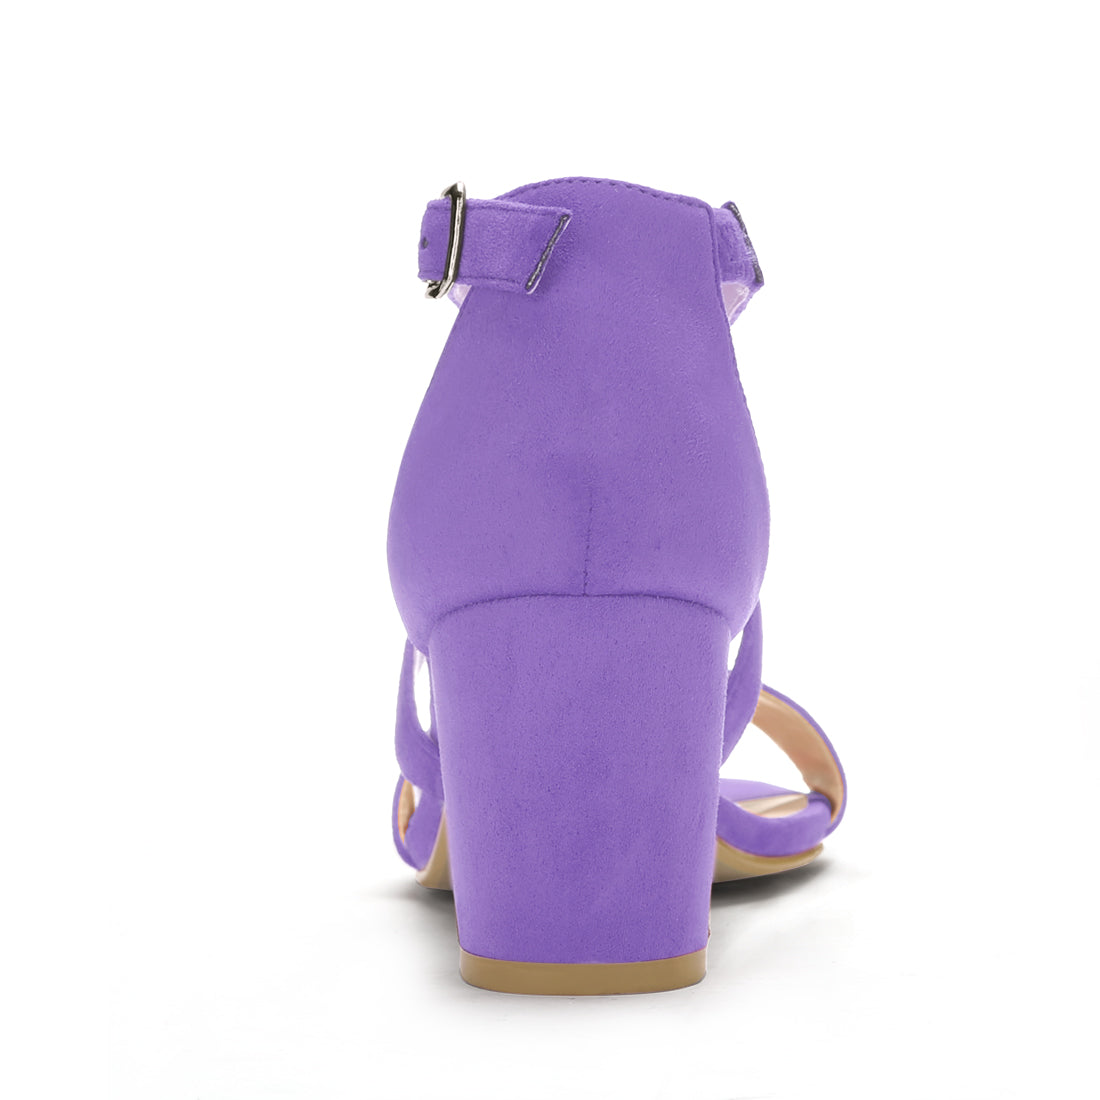 Allegra K Straps Mid Heel Ankle Strap Sandals Purple